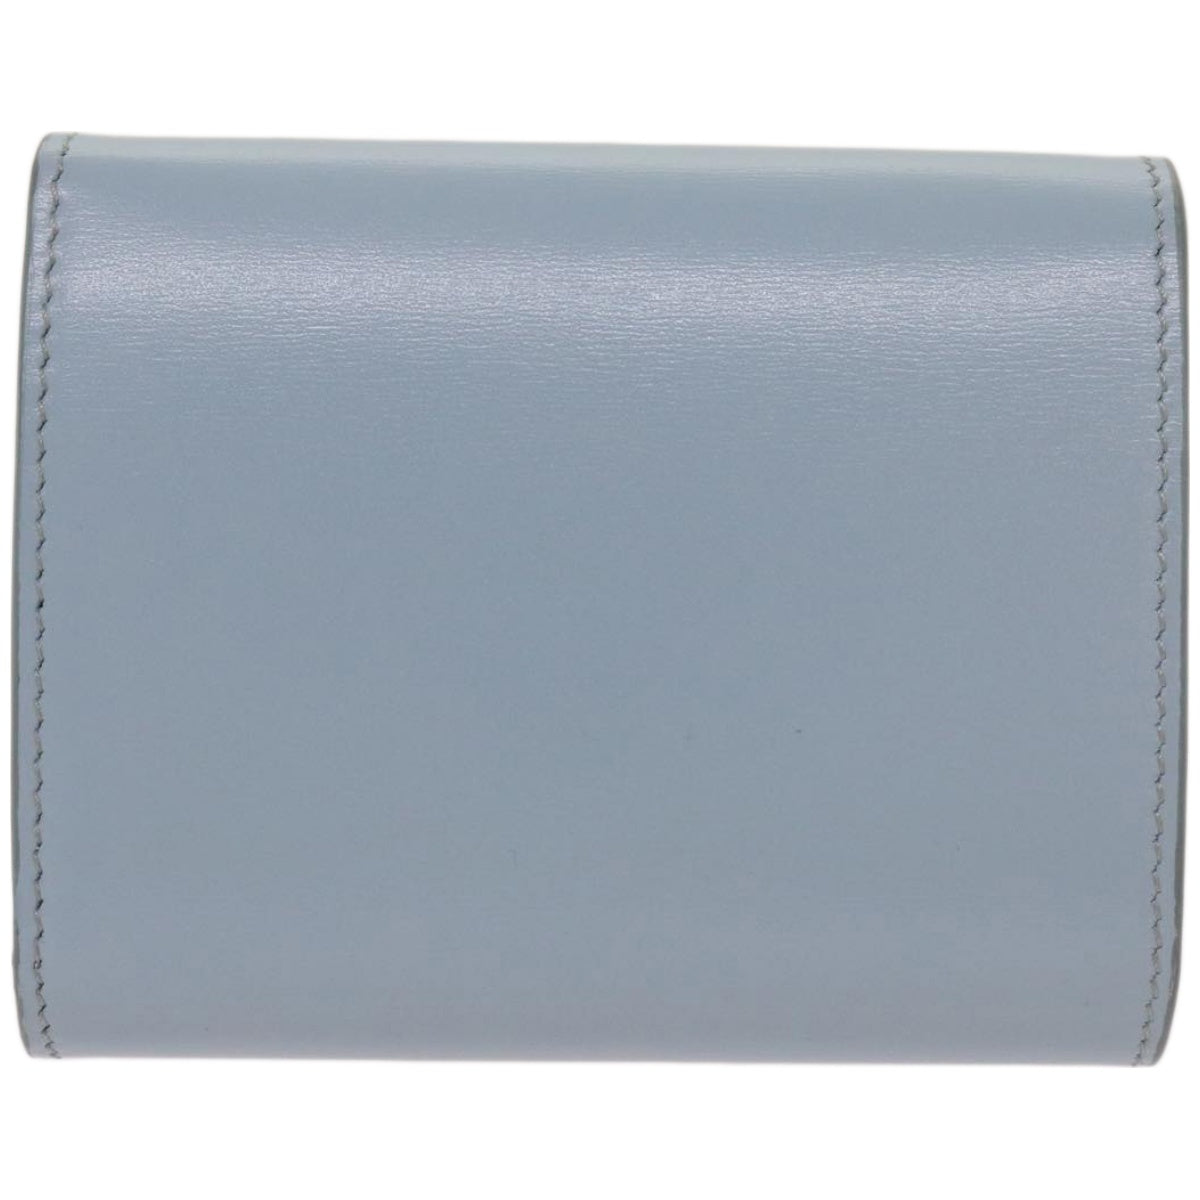 CELINE Wallet Leather Light Blue 10D783DPV Auth 66844A - 0